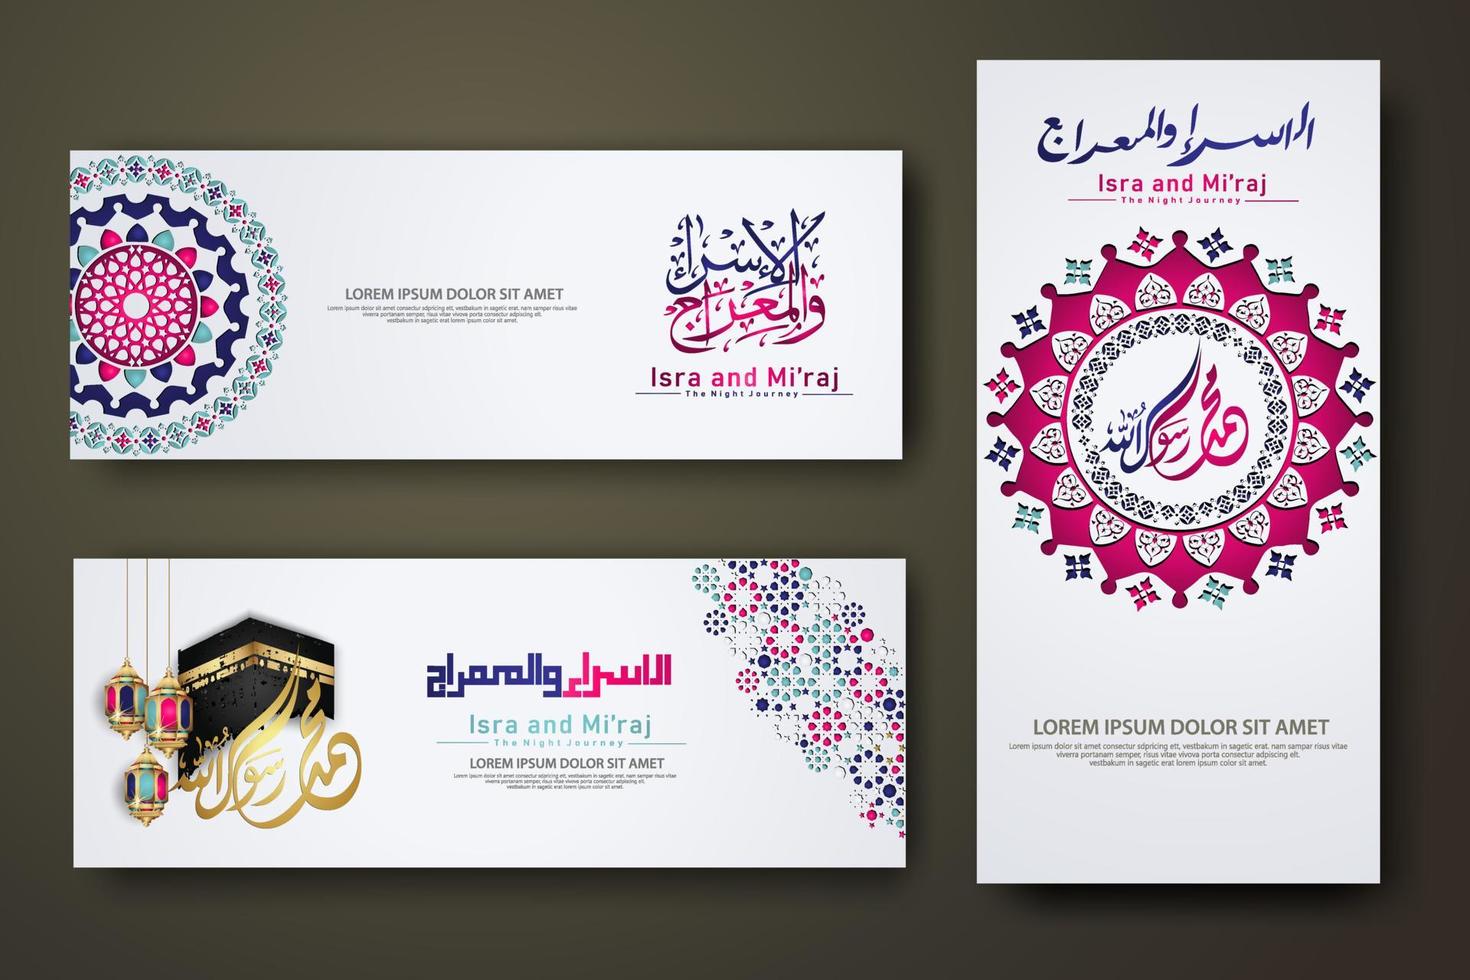 al-isra wal mi'raj profeten muhammed kalligrafi set banner mall vektor